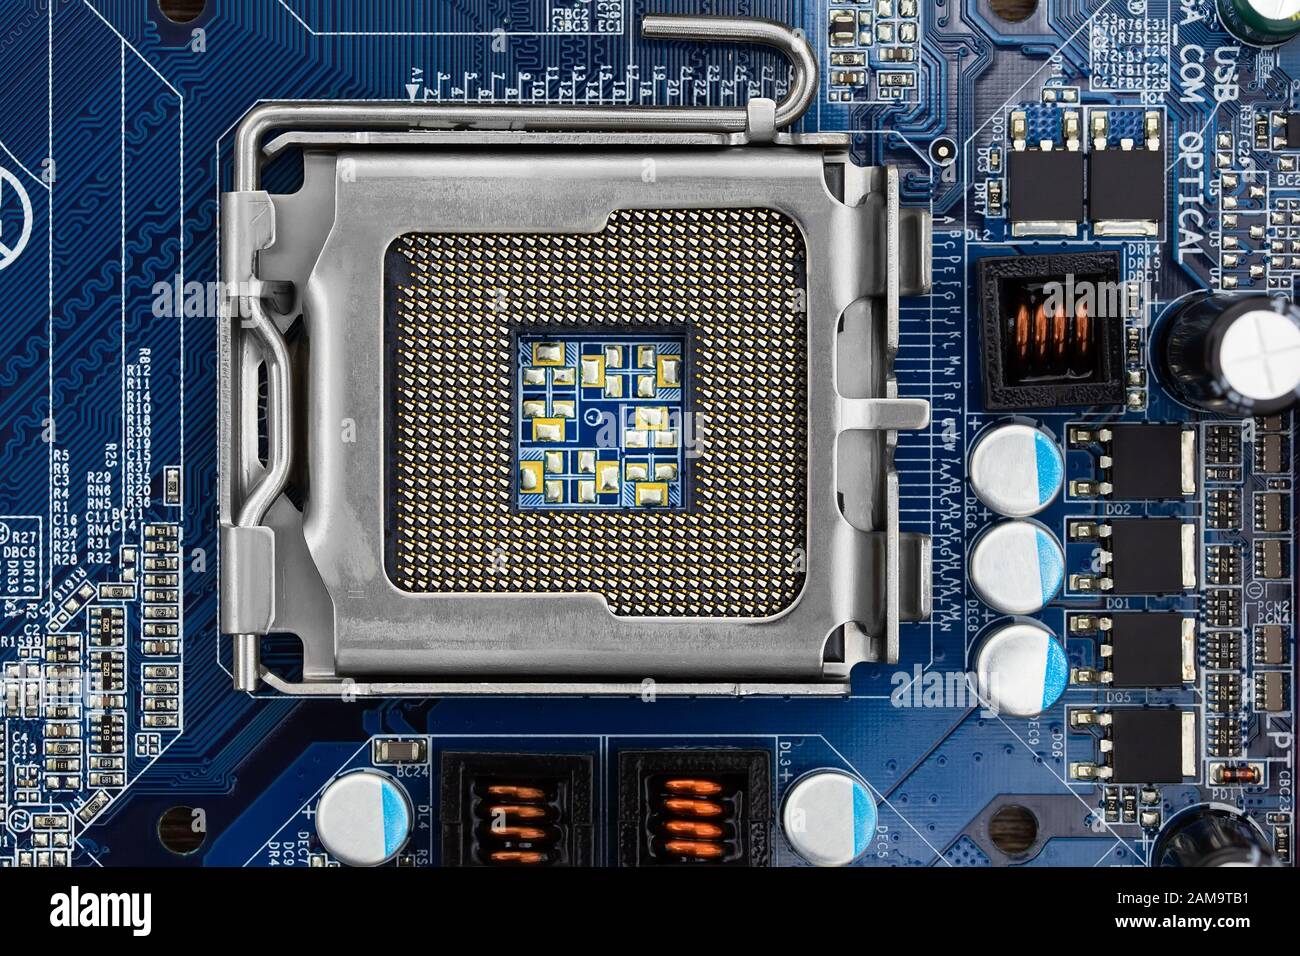 Prise CPU sur la carte mère de l'ordinateur vue de dessus,closeup Banque D'Images